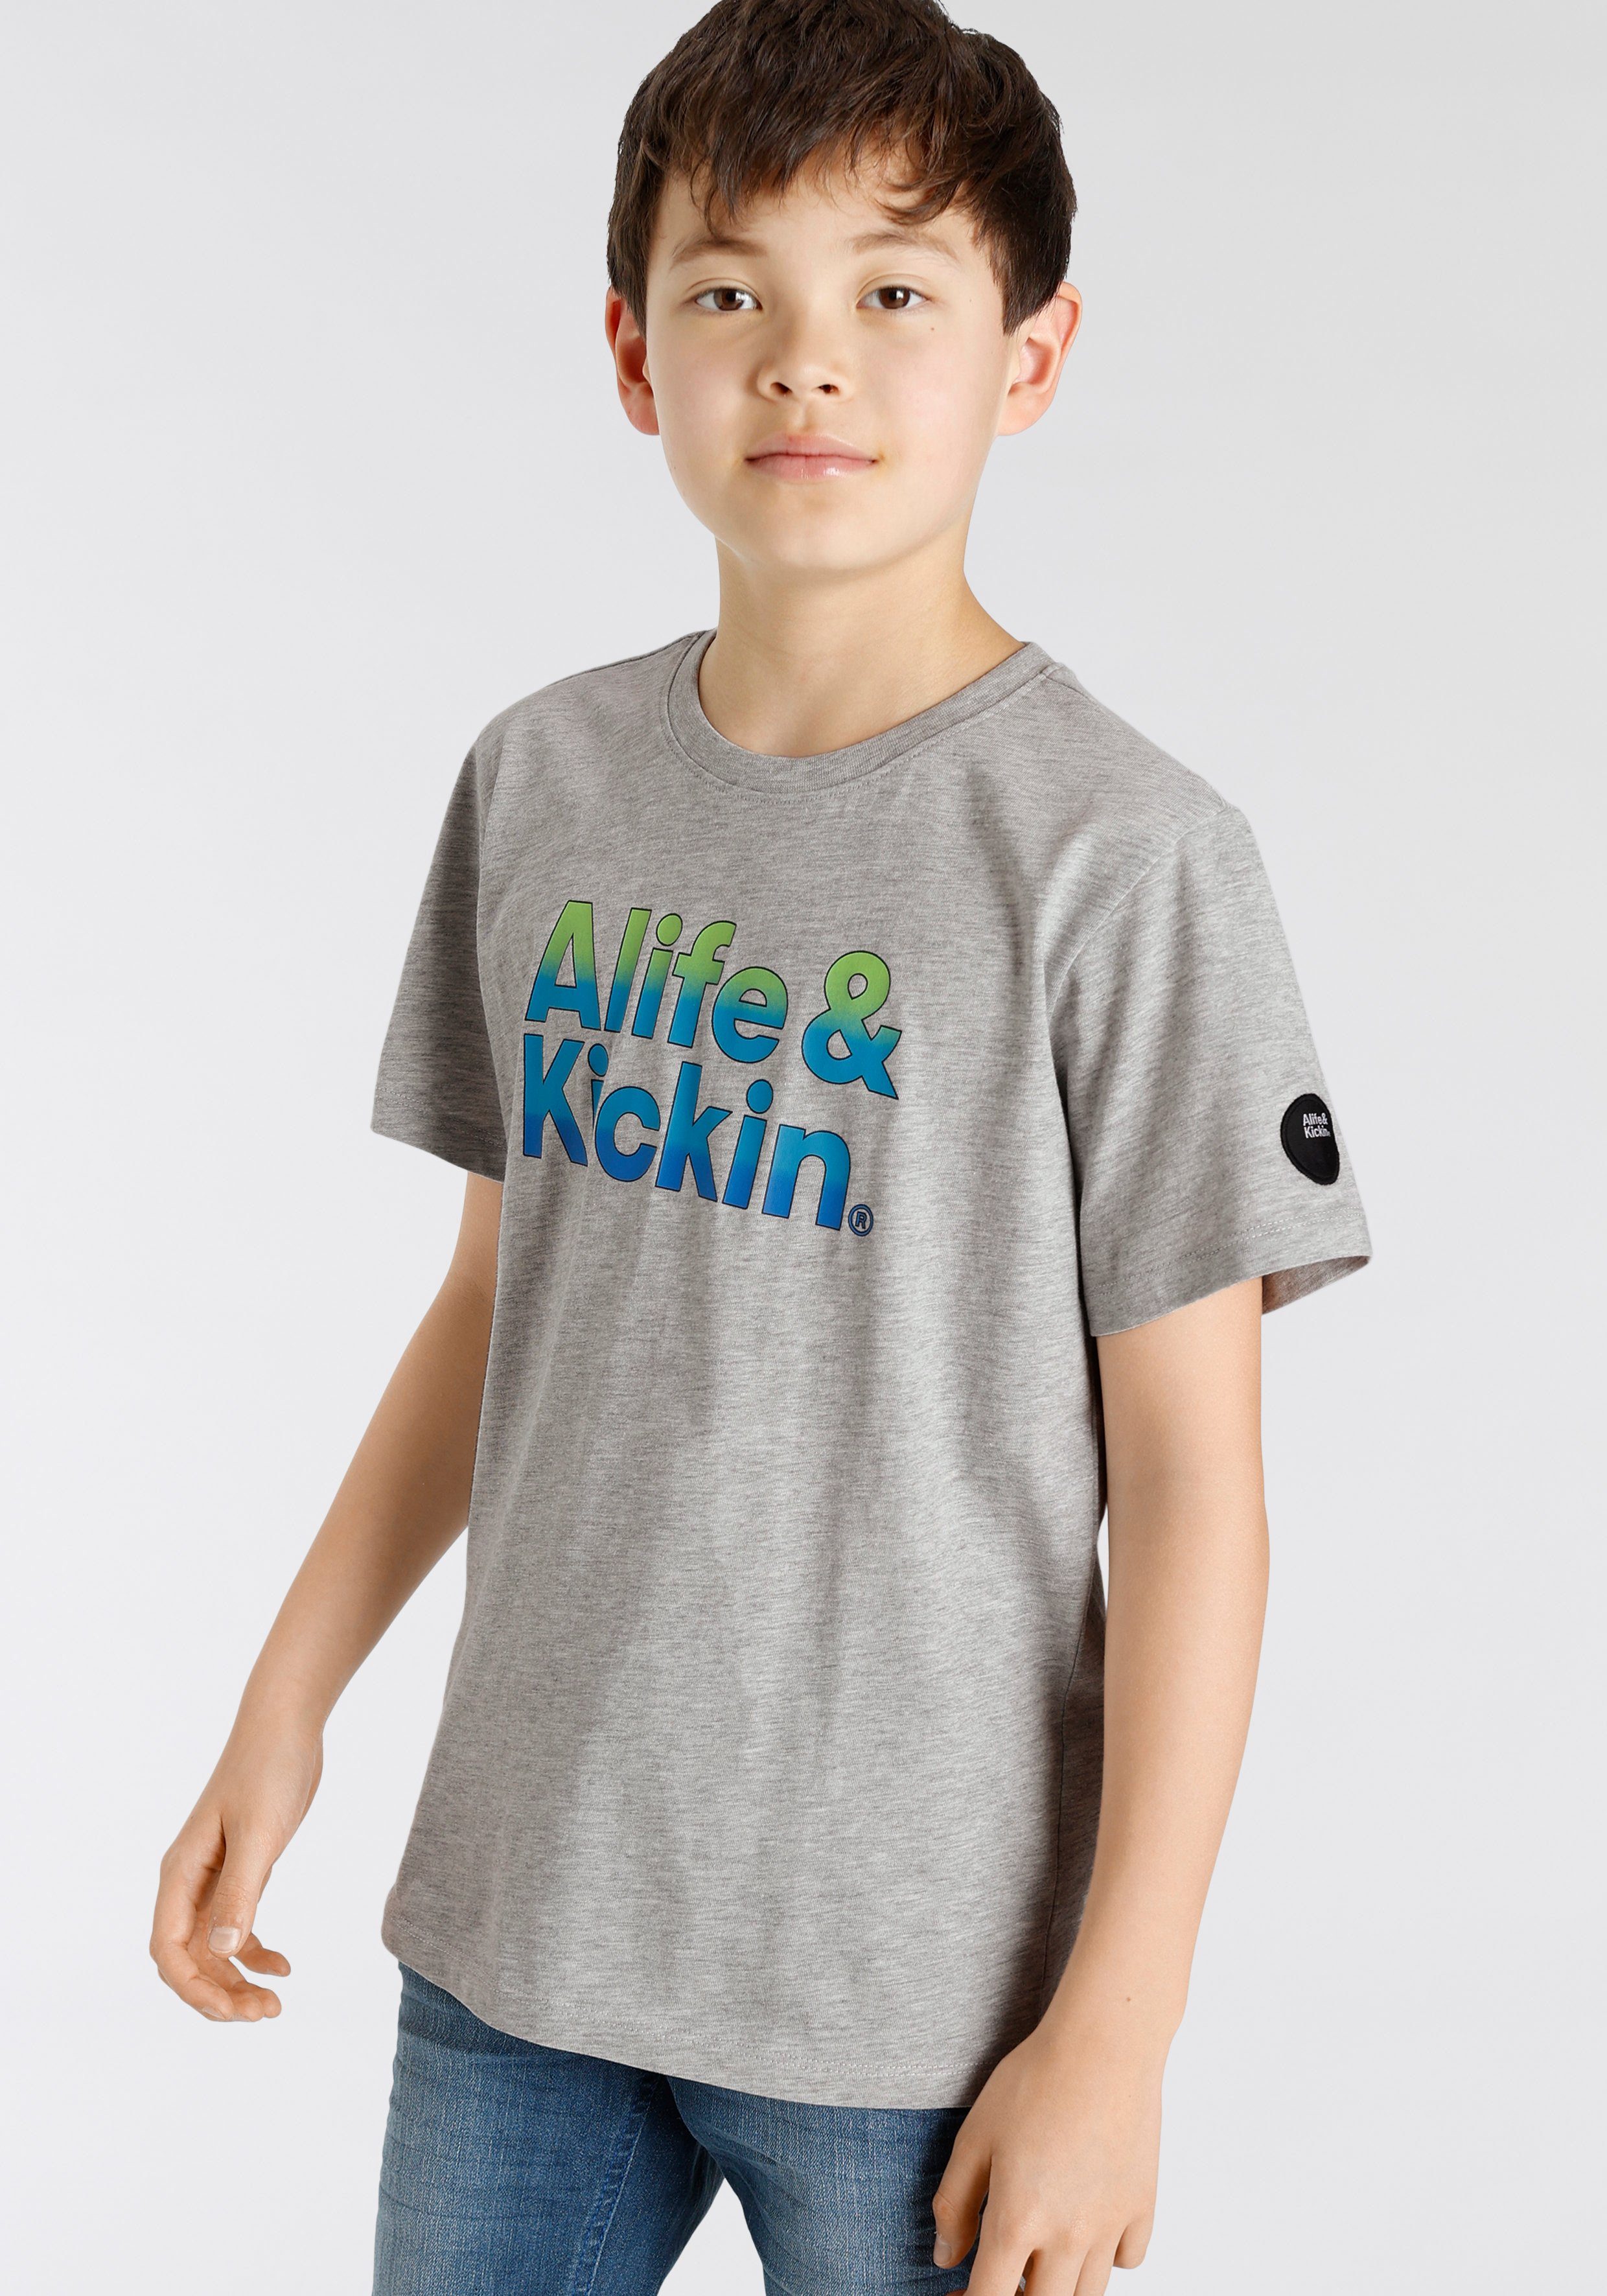 Alife & für Logo-Print melierter T-Shirt NEUE in Kids Alife&Kickin Qualität, MARKE! Kickin